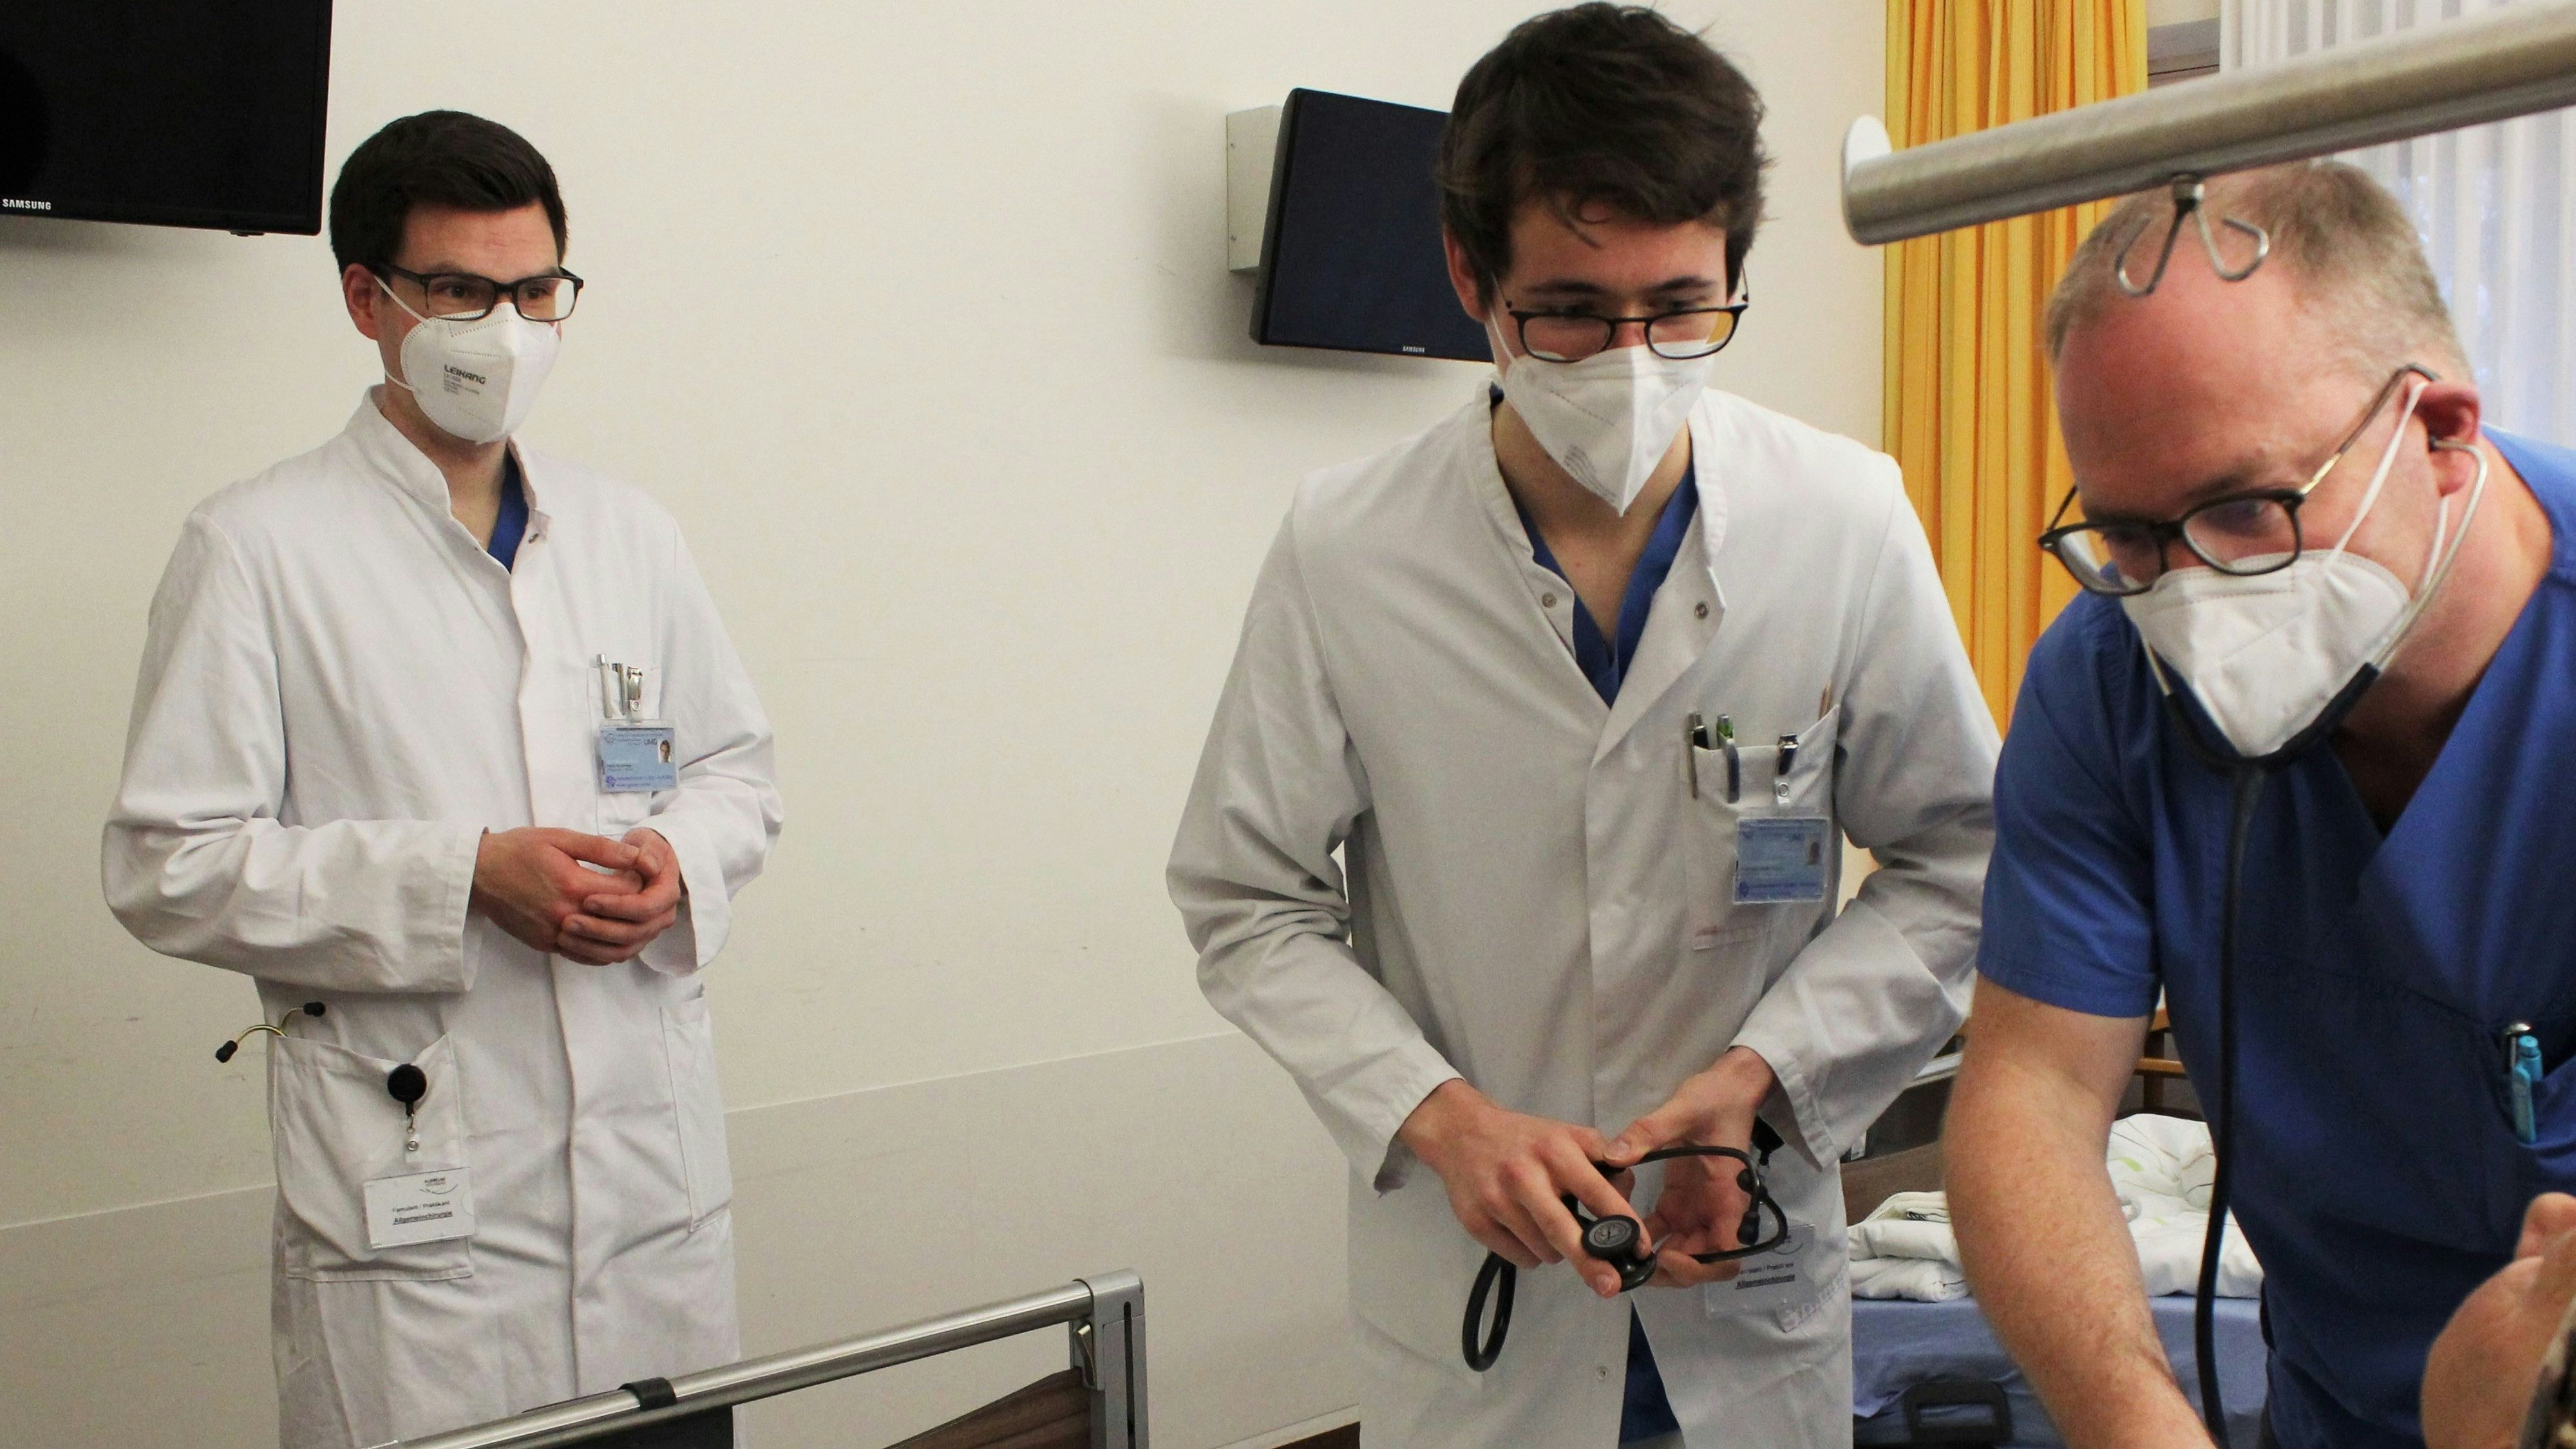 Dr. Steffen Neumann (r) unterrichtet die Medizinstudenten der UMG, Martin Strohmeyer (l) und Maximilian-Martin Lahmer, am Krankenbett einer Patientin im Klinikum Wolfsburg. Foto: dpa